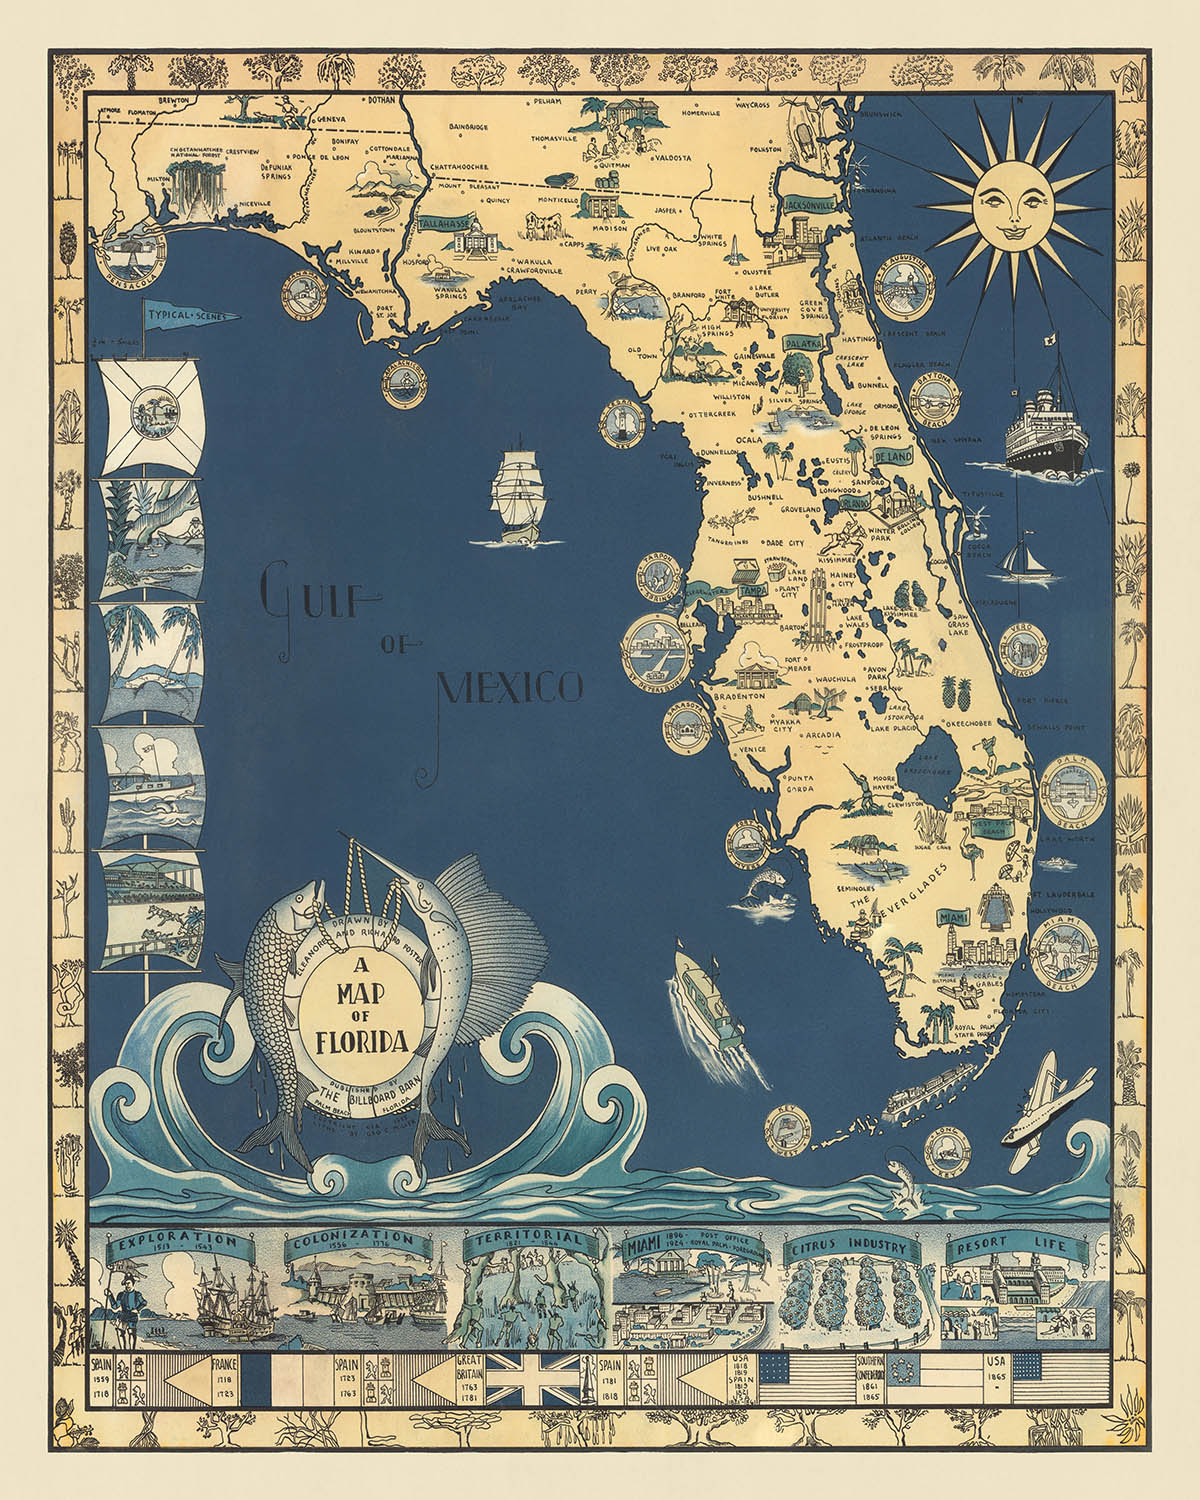 Ancienne carte de l'évolution historique de la Floride par Foster, 1935 : colonisation espagnole, domination britannique, appartenance à la Confédération du Sud, inclusion aux États-Unis et richesse de la faune et des monuments.